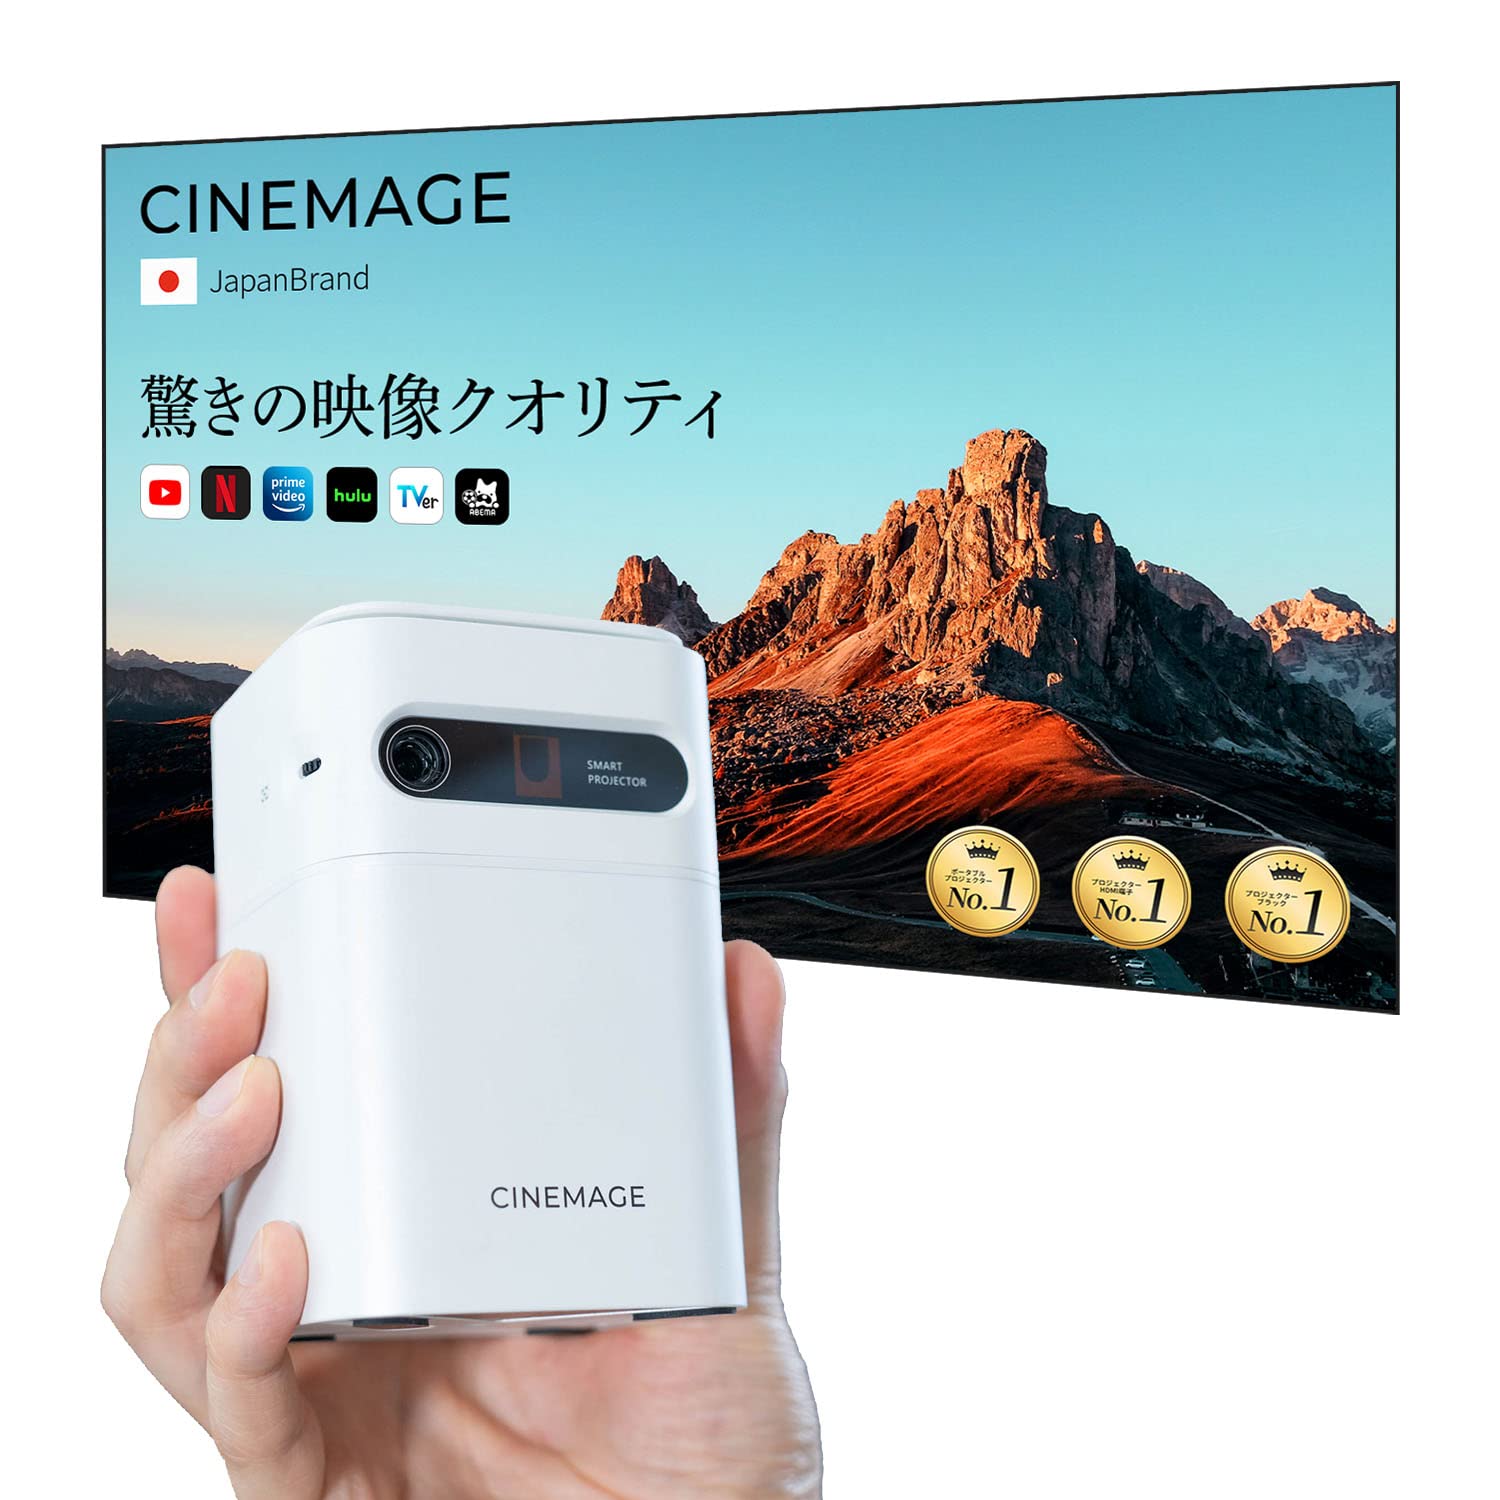 CINEMAGE mini モバイルプロジェクター（DLP方式 120ANSIルーメン 480p）の商品画像